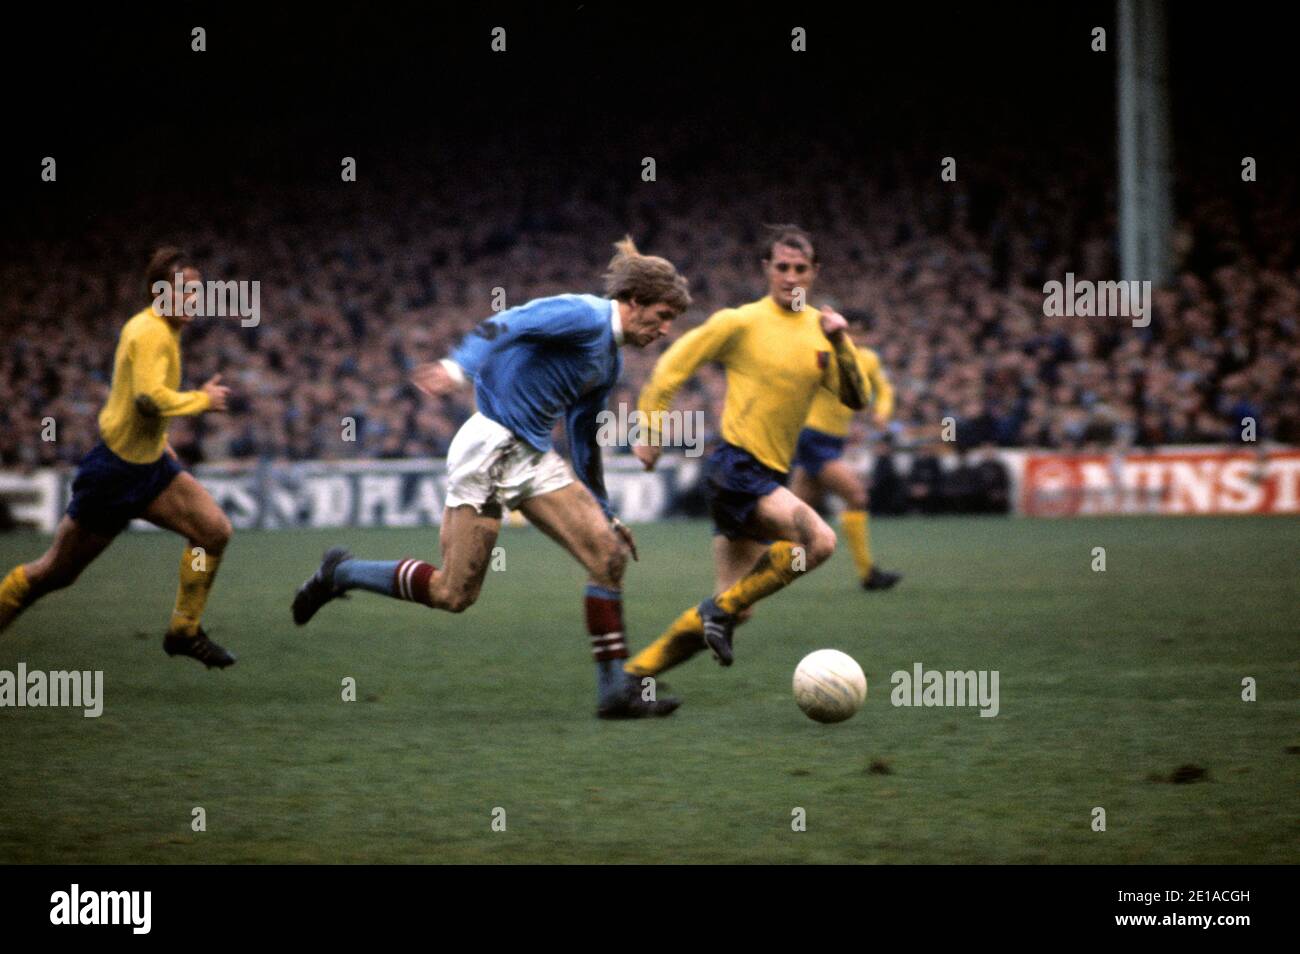 Foto de archivo fechada 1-11-1970 del Colin Bell de Manchester City en acción. Foto de stock